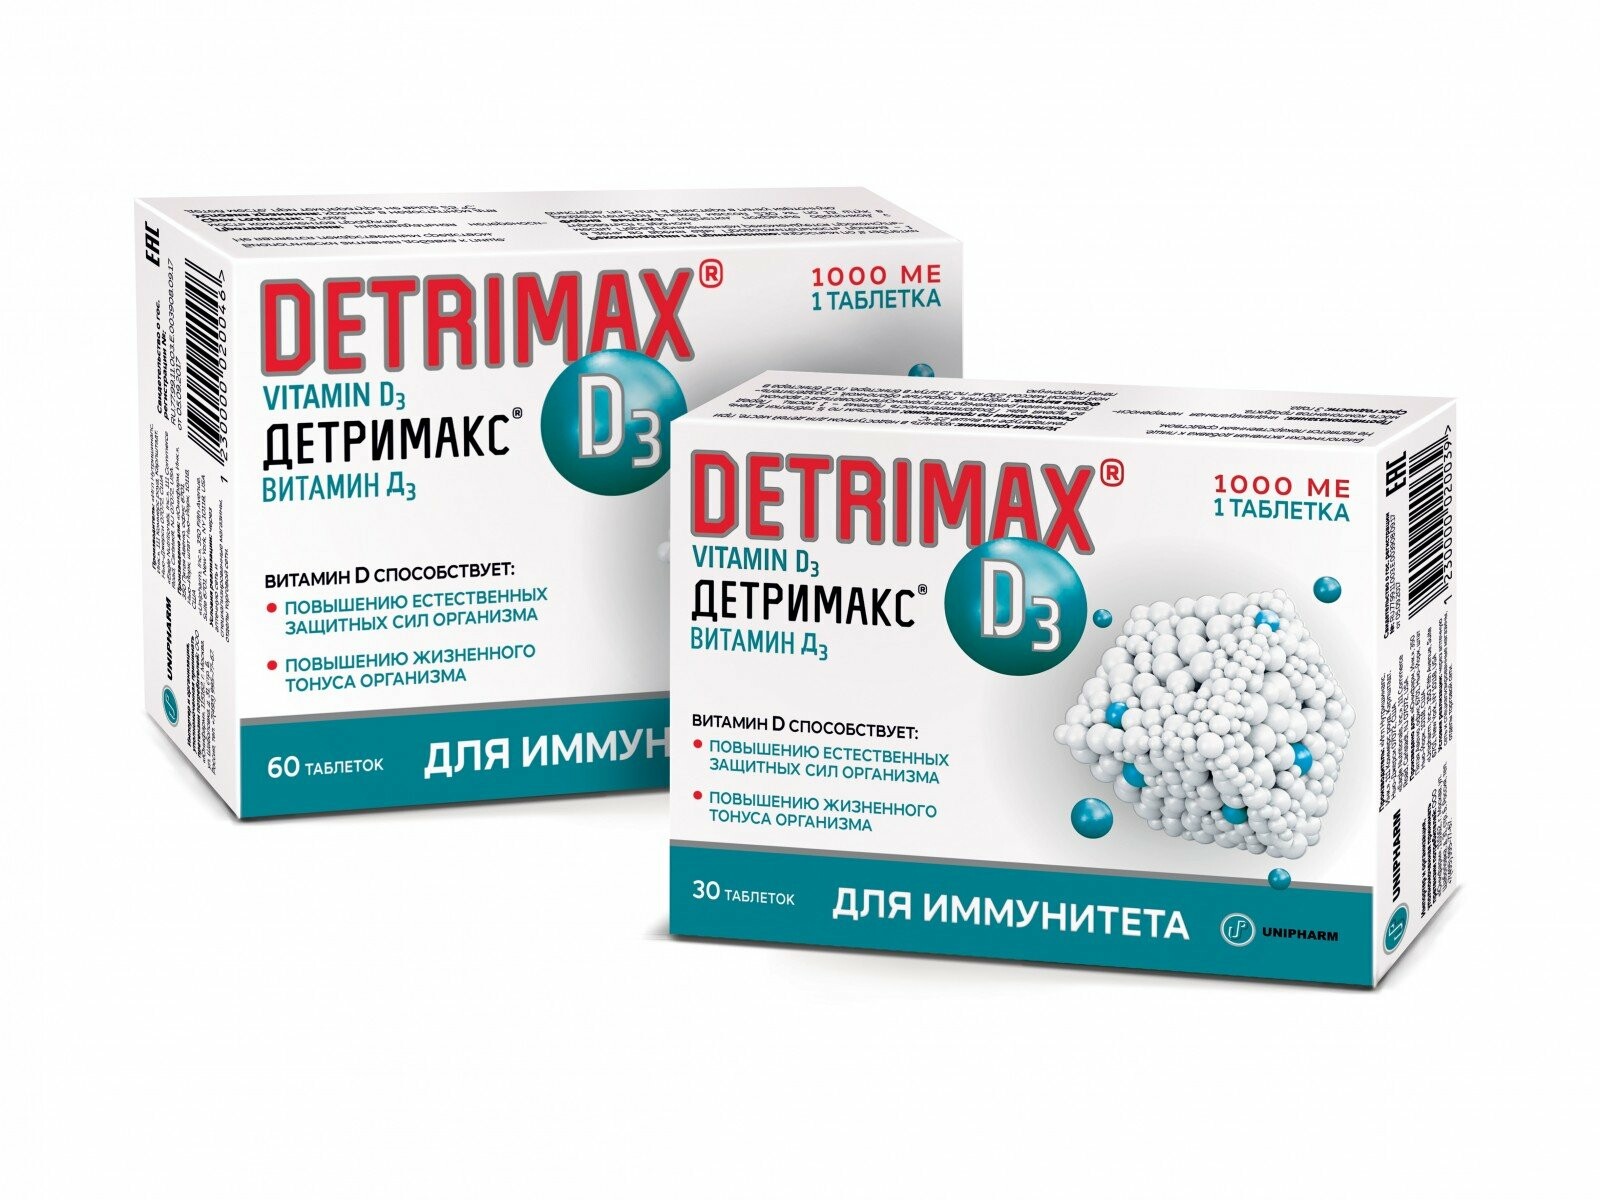 Лекарственный д3. Детримакс витамин д3. Детримакс 1000 /№ 60. Детримакс d3 1000 ме. Детримакс 5000мг.